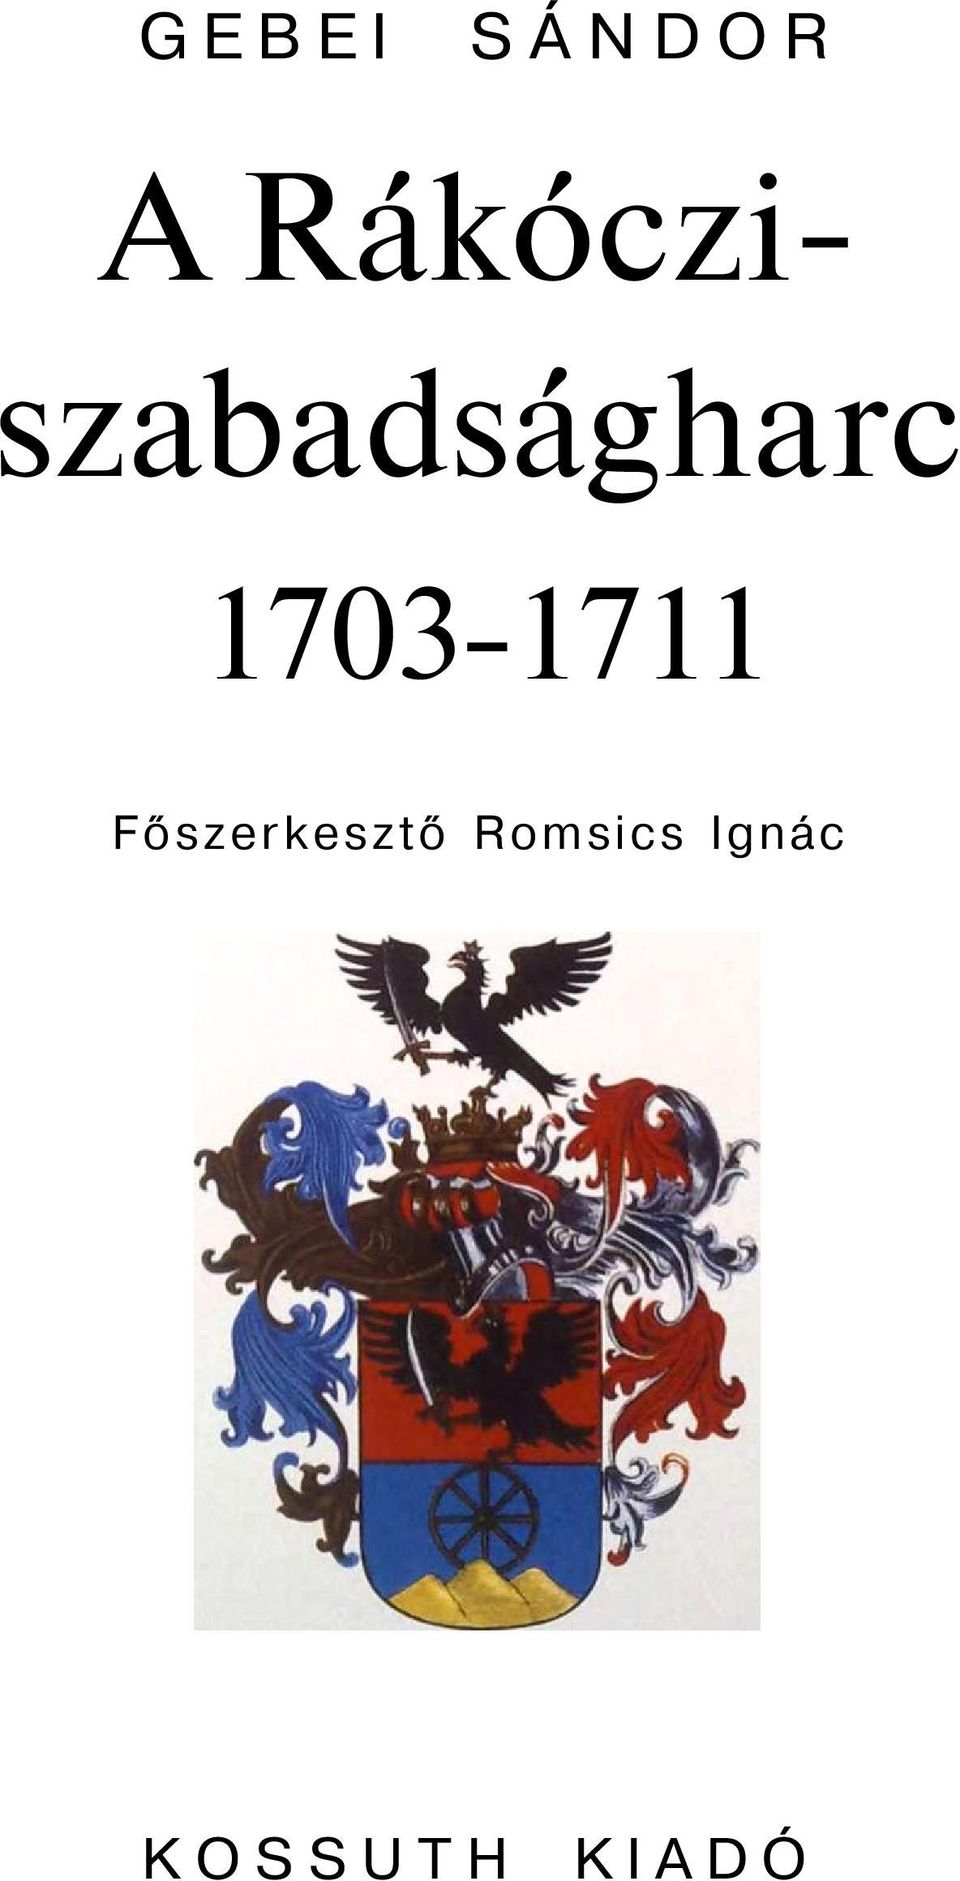 1703-1711